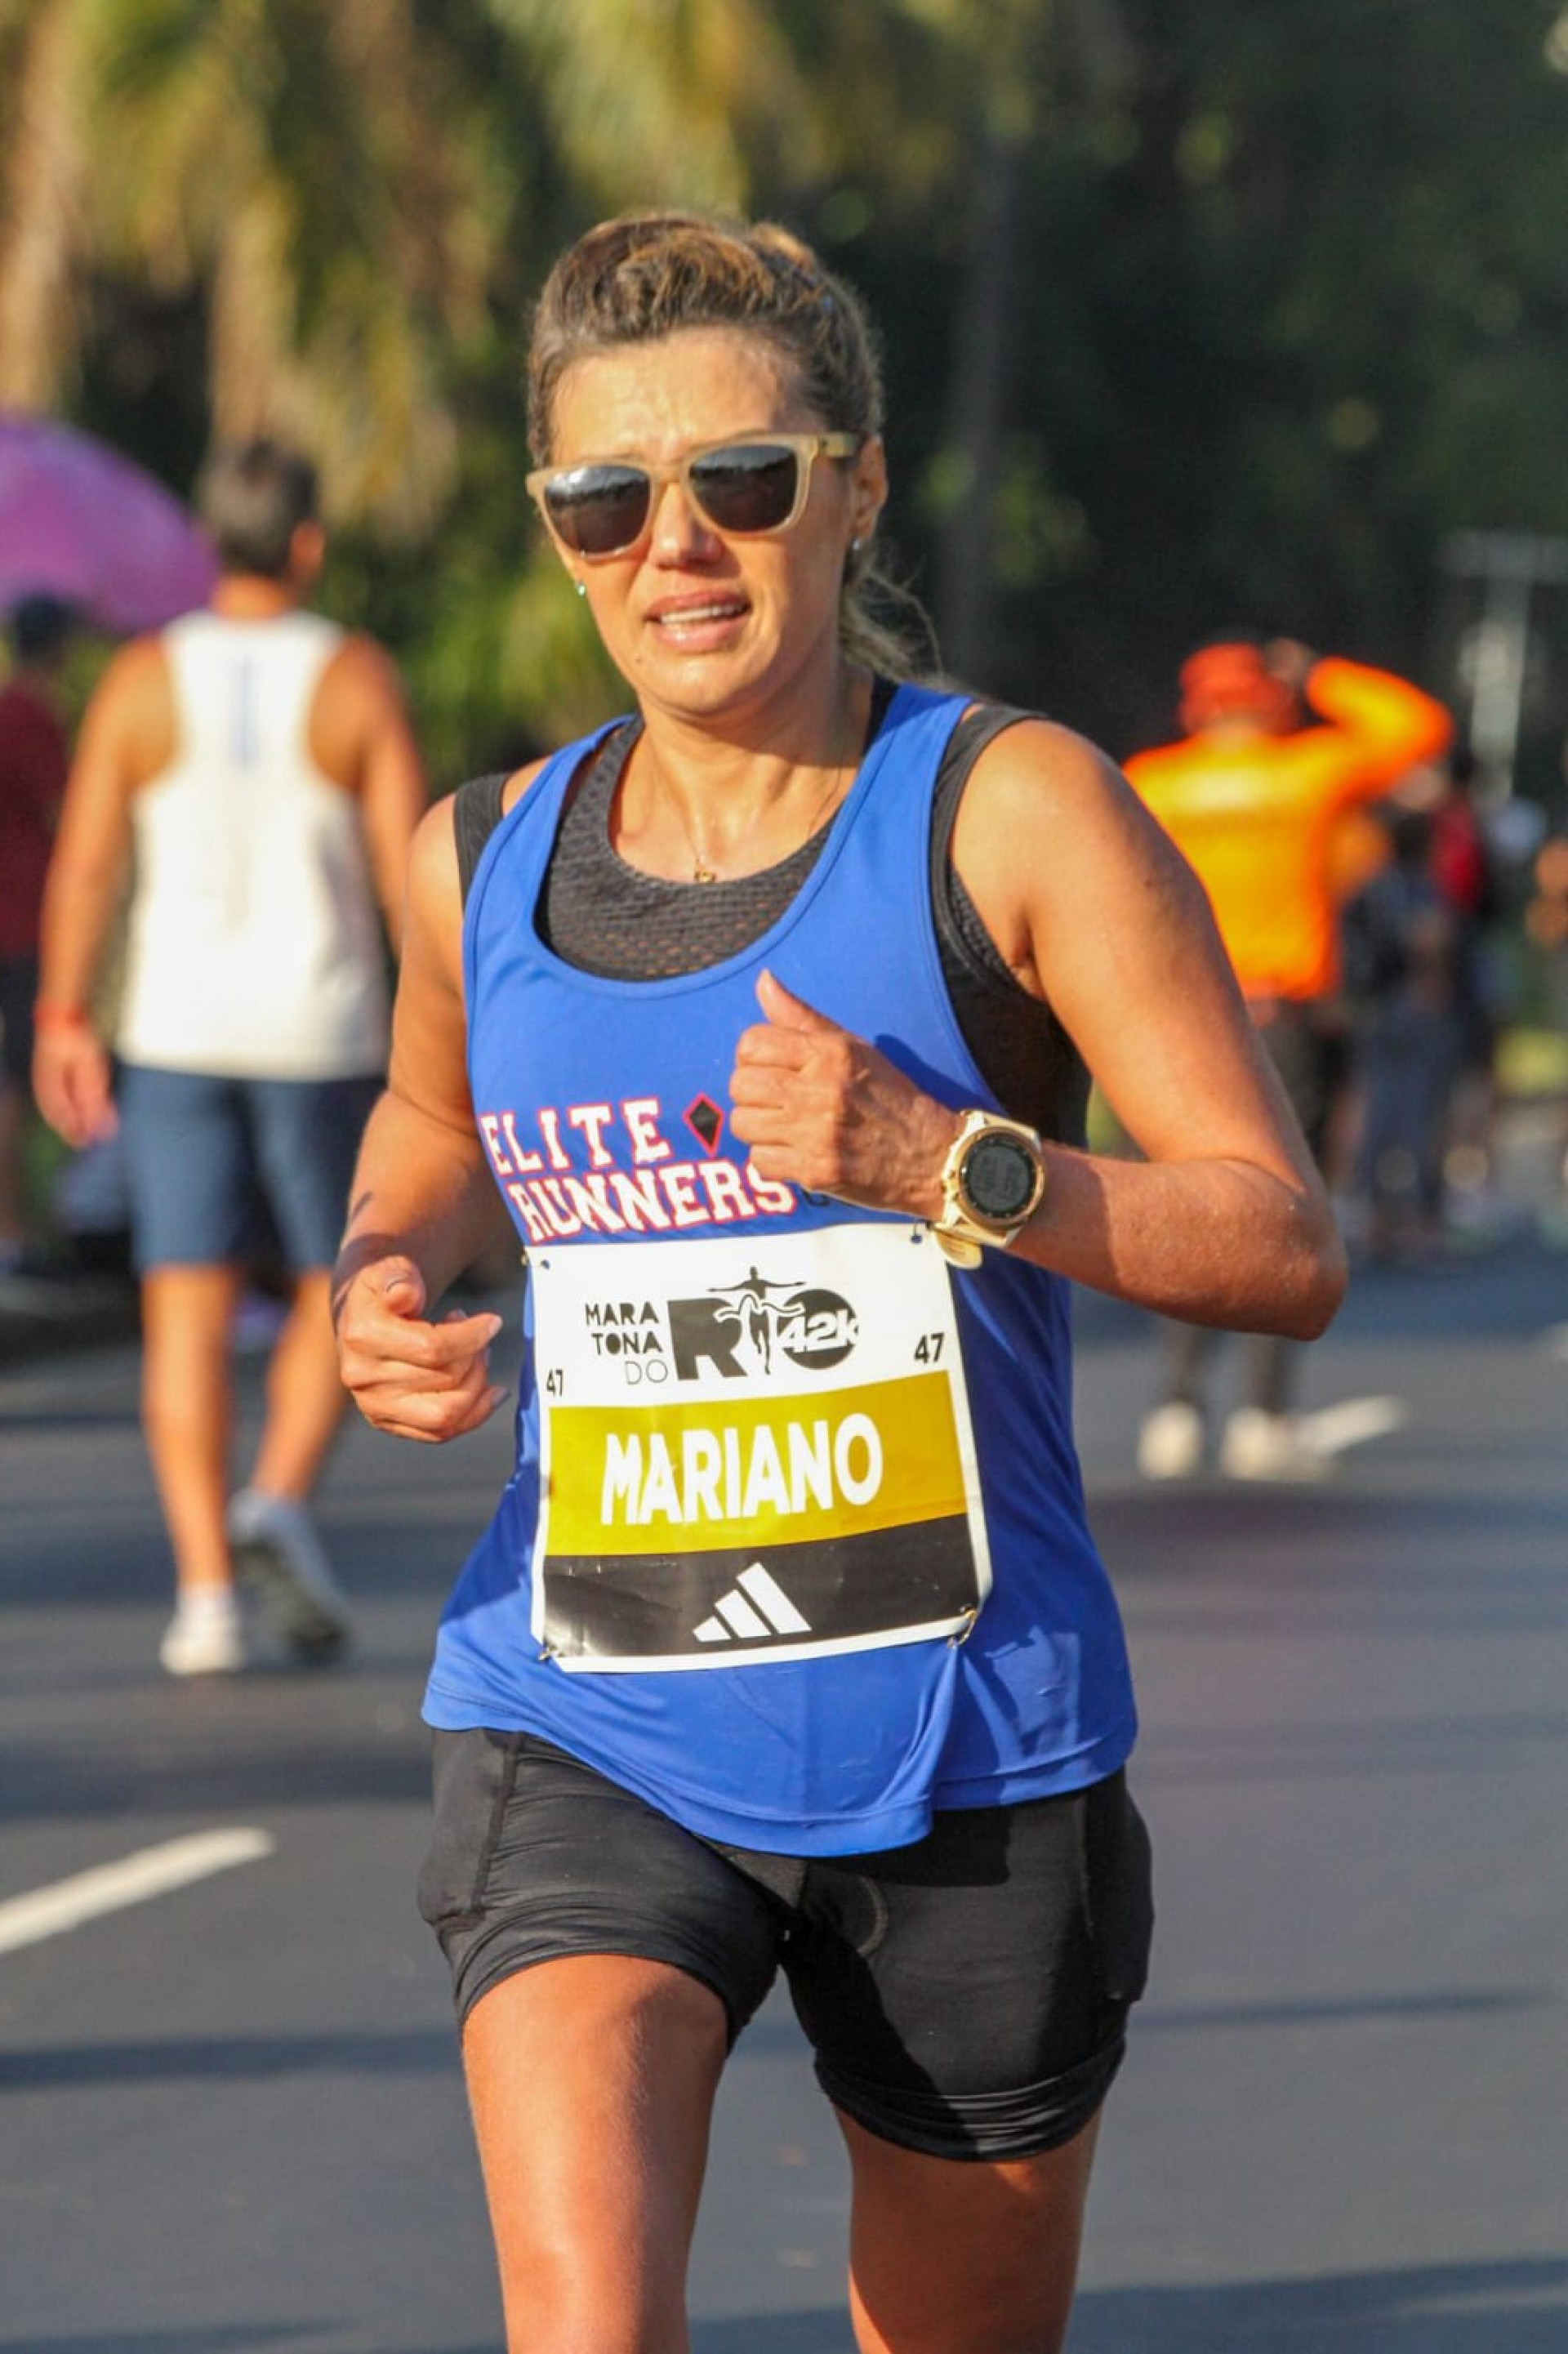 Solange Mariano atleta de Angra na Maratona do Rio - Divulgação/Atleta